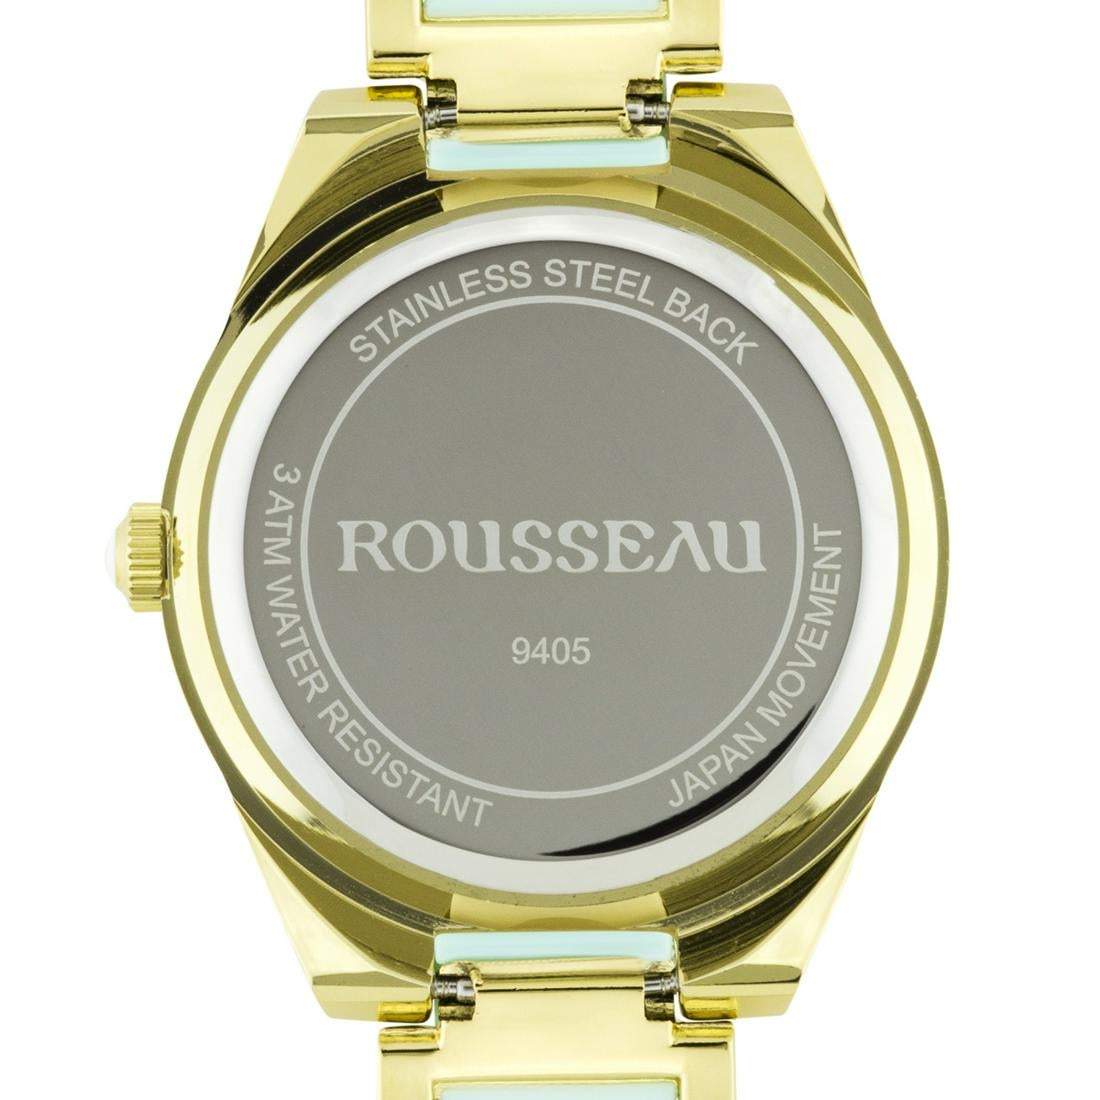 Rousseau Elegant Enamel Insert Link Ladies Watch Teal - Shop Thrifty Treasures